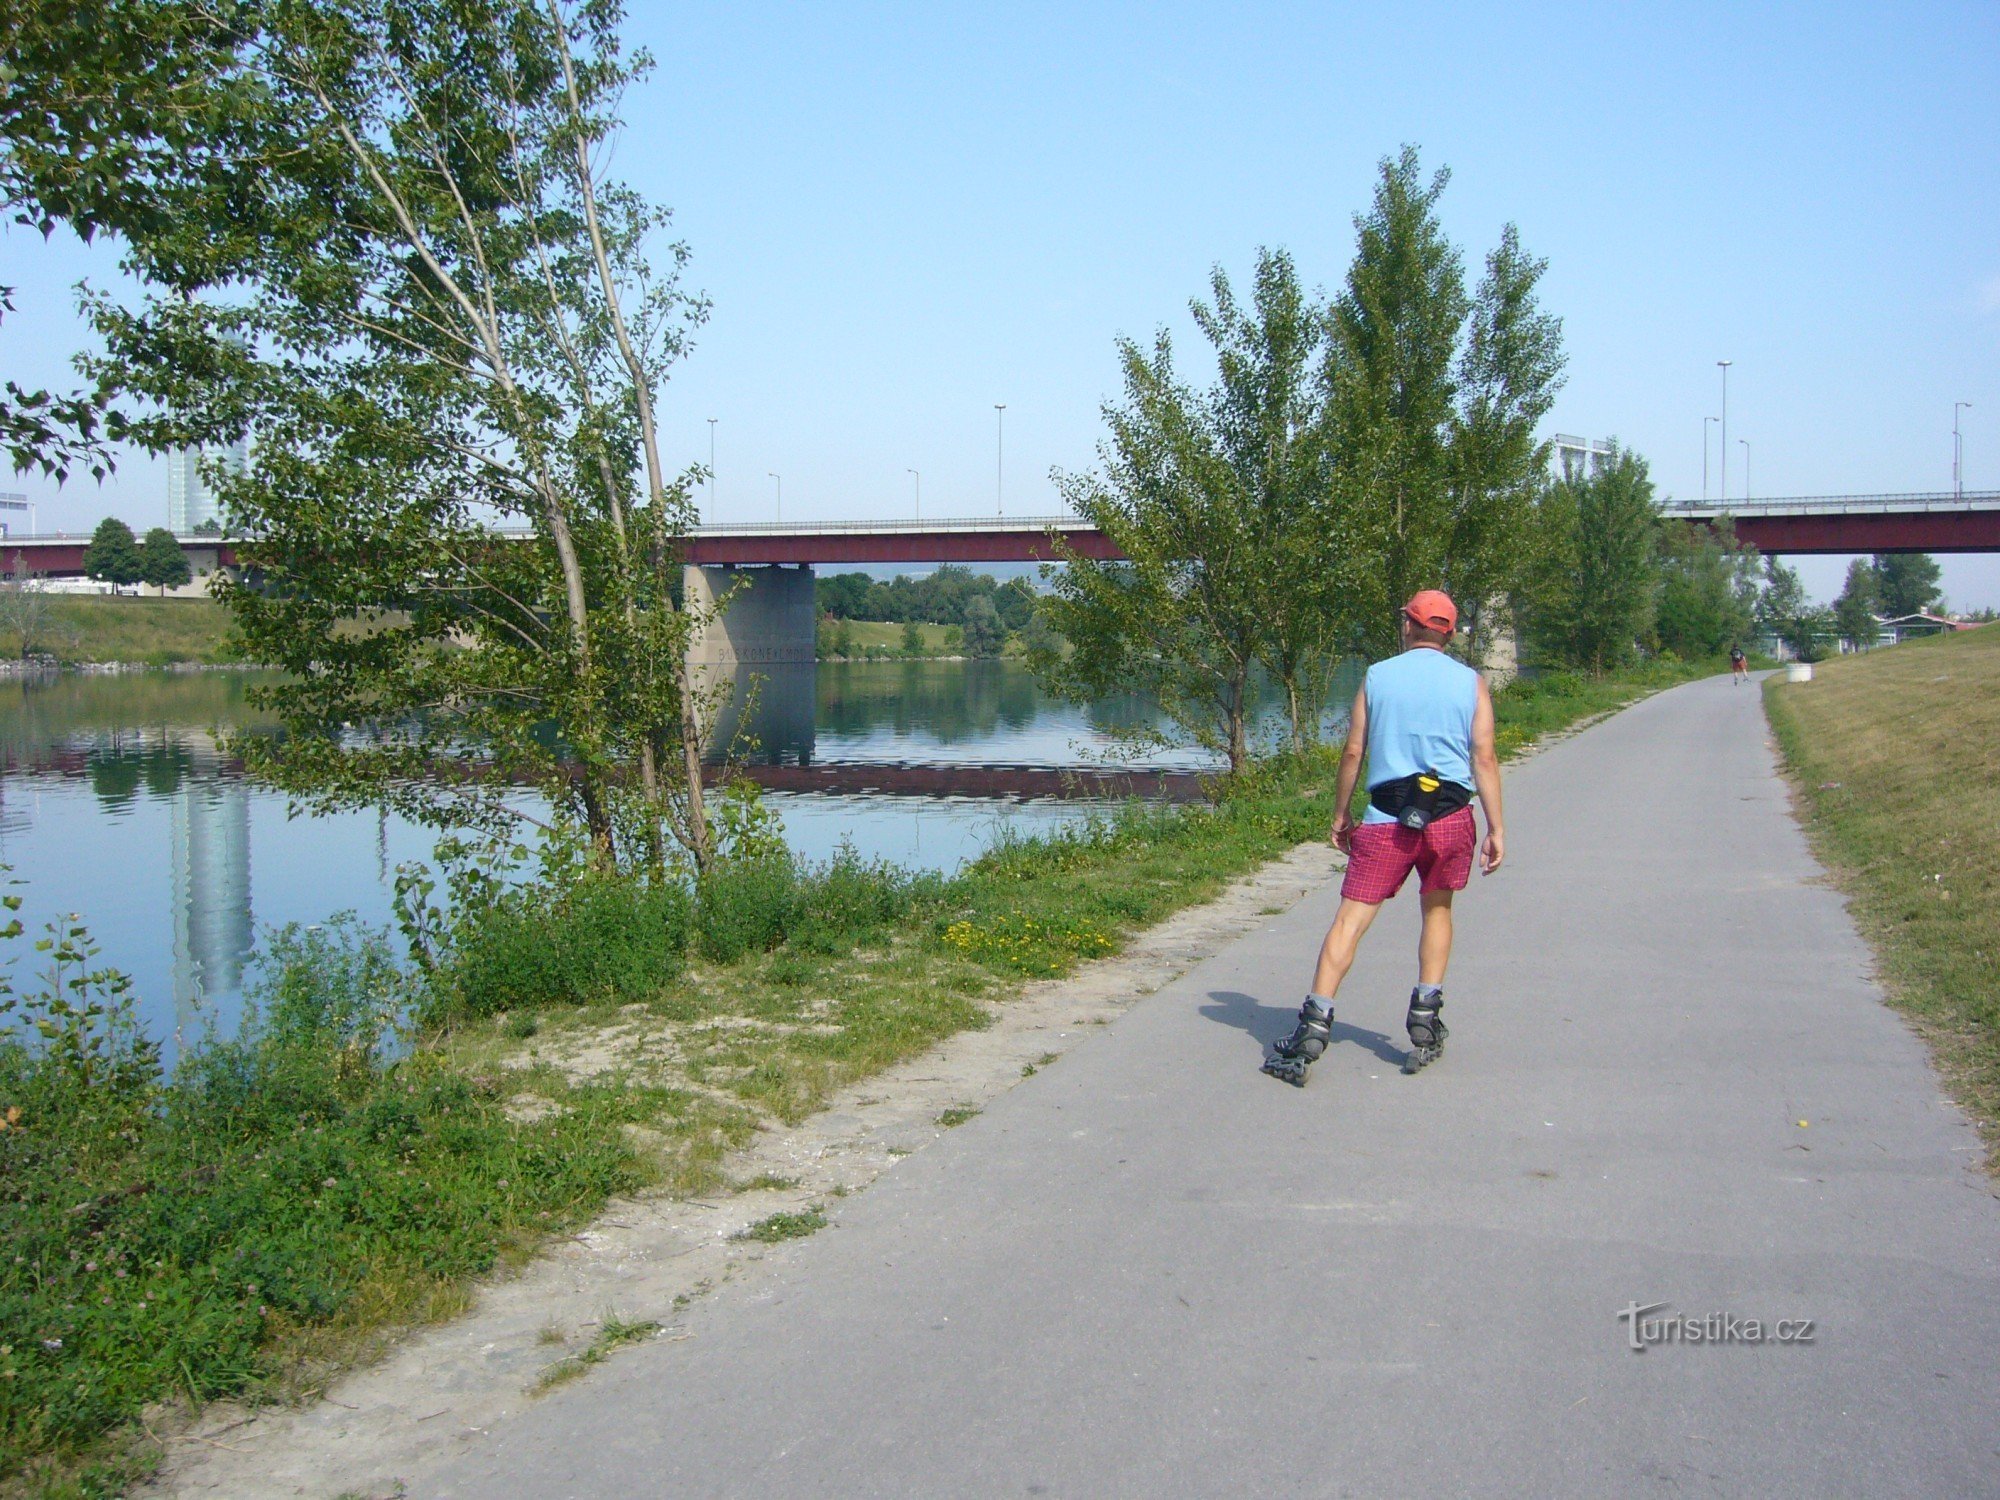 Wiedeńskie ścieżki rowerowe wzdłuż Dunaju na In-lines – jak raz spróbujesz, będziesz chciał wracać